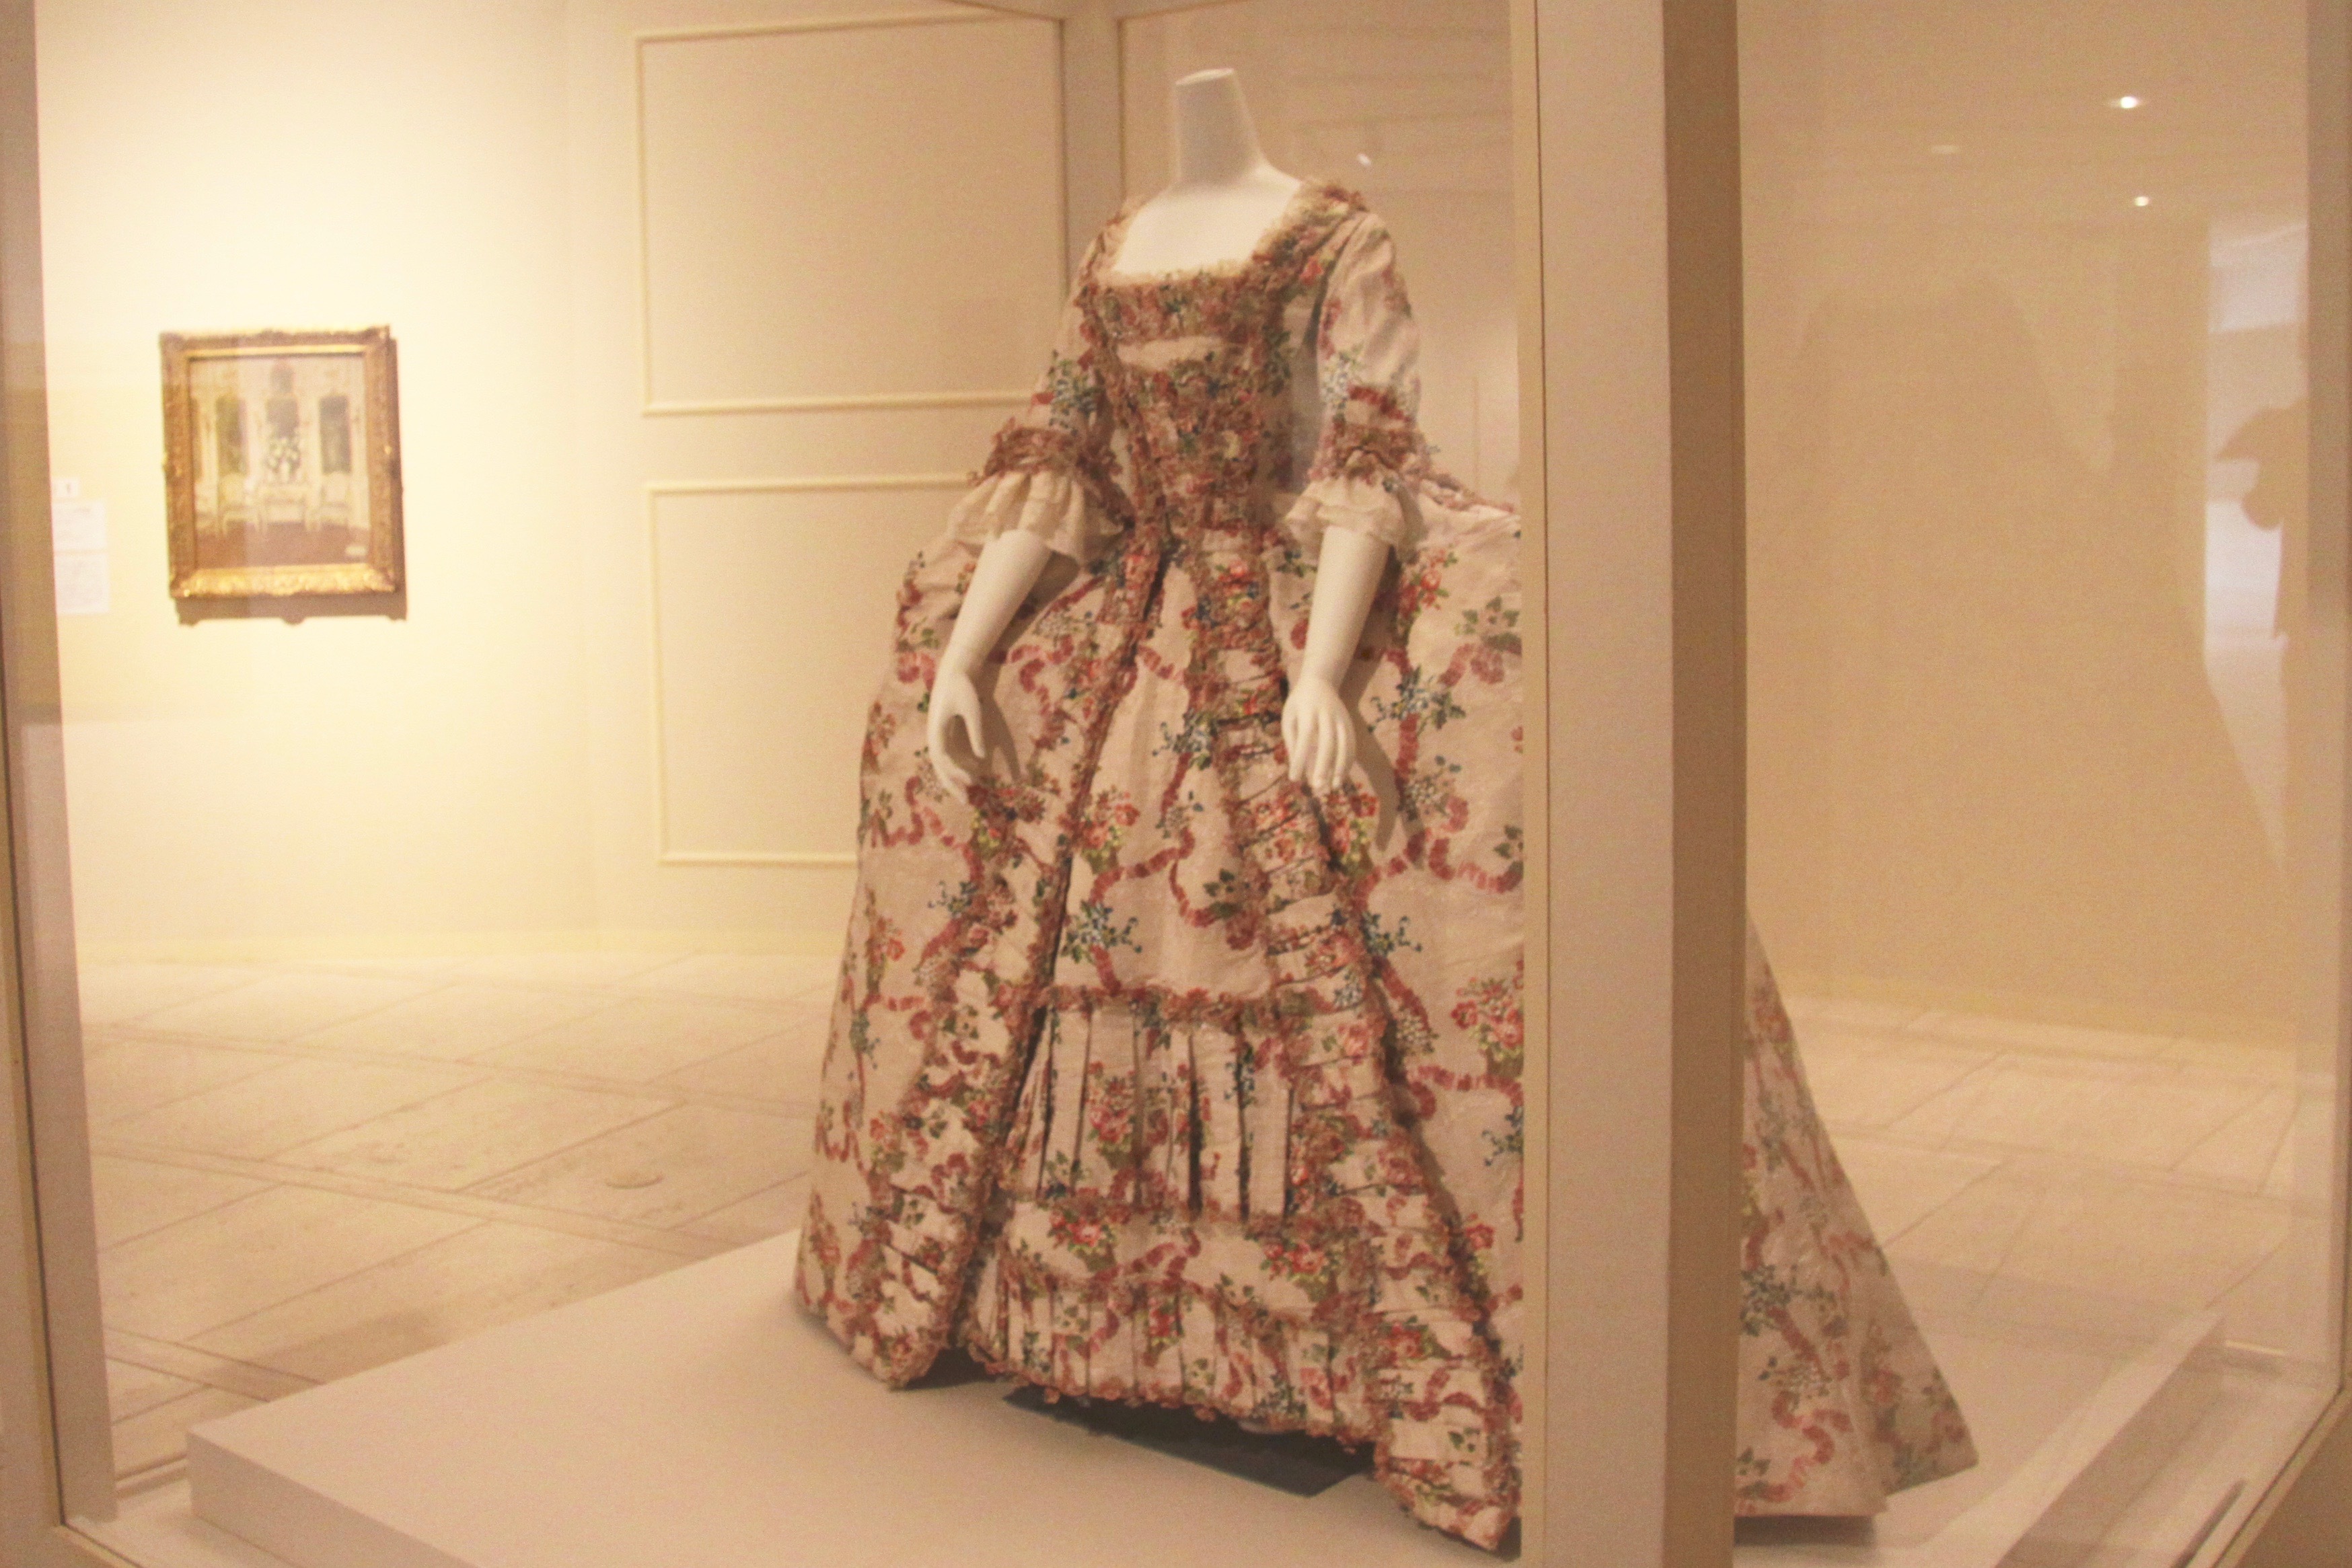 ドレス（3つのパーツからなる） フランス、1770年頃